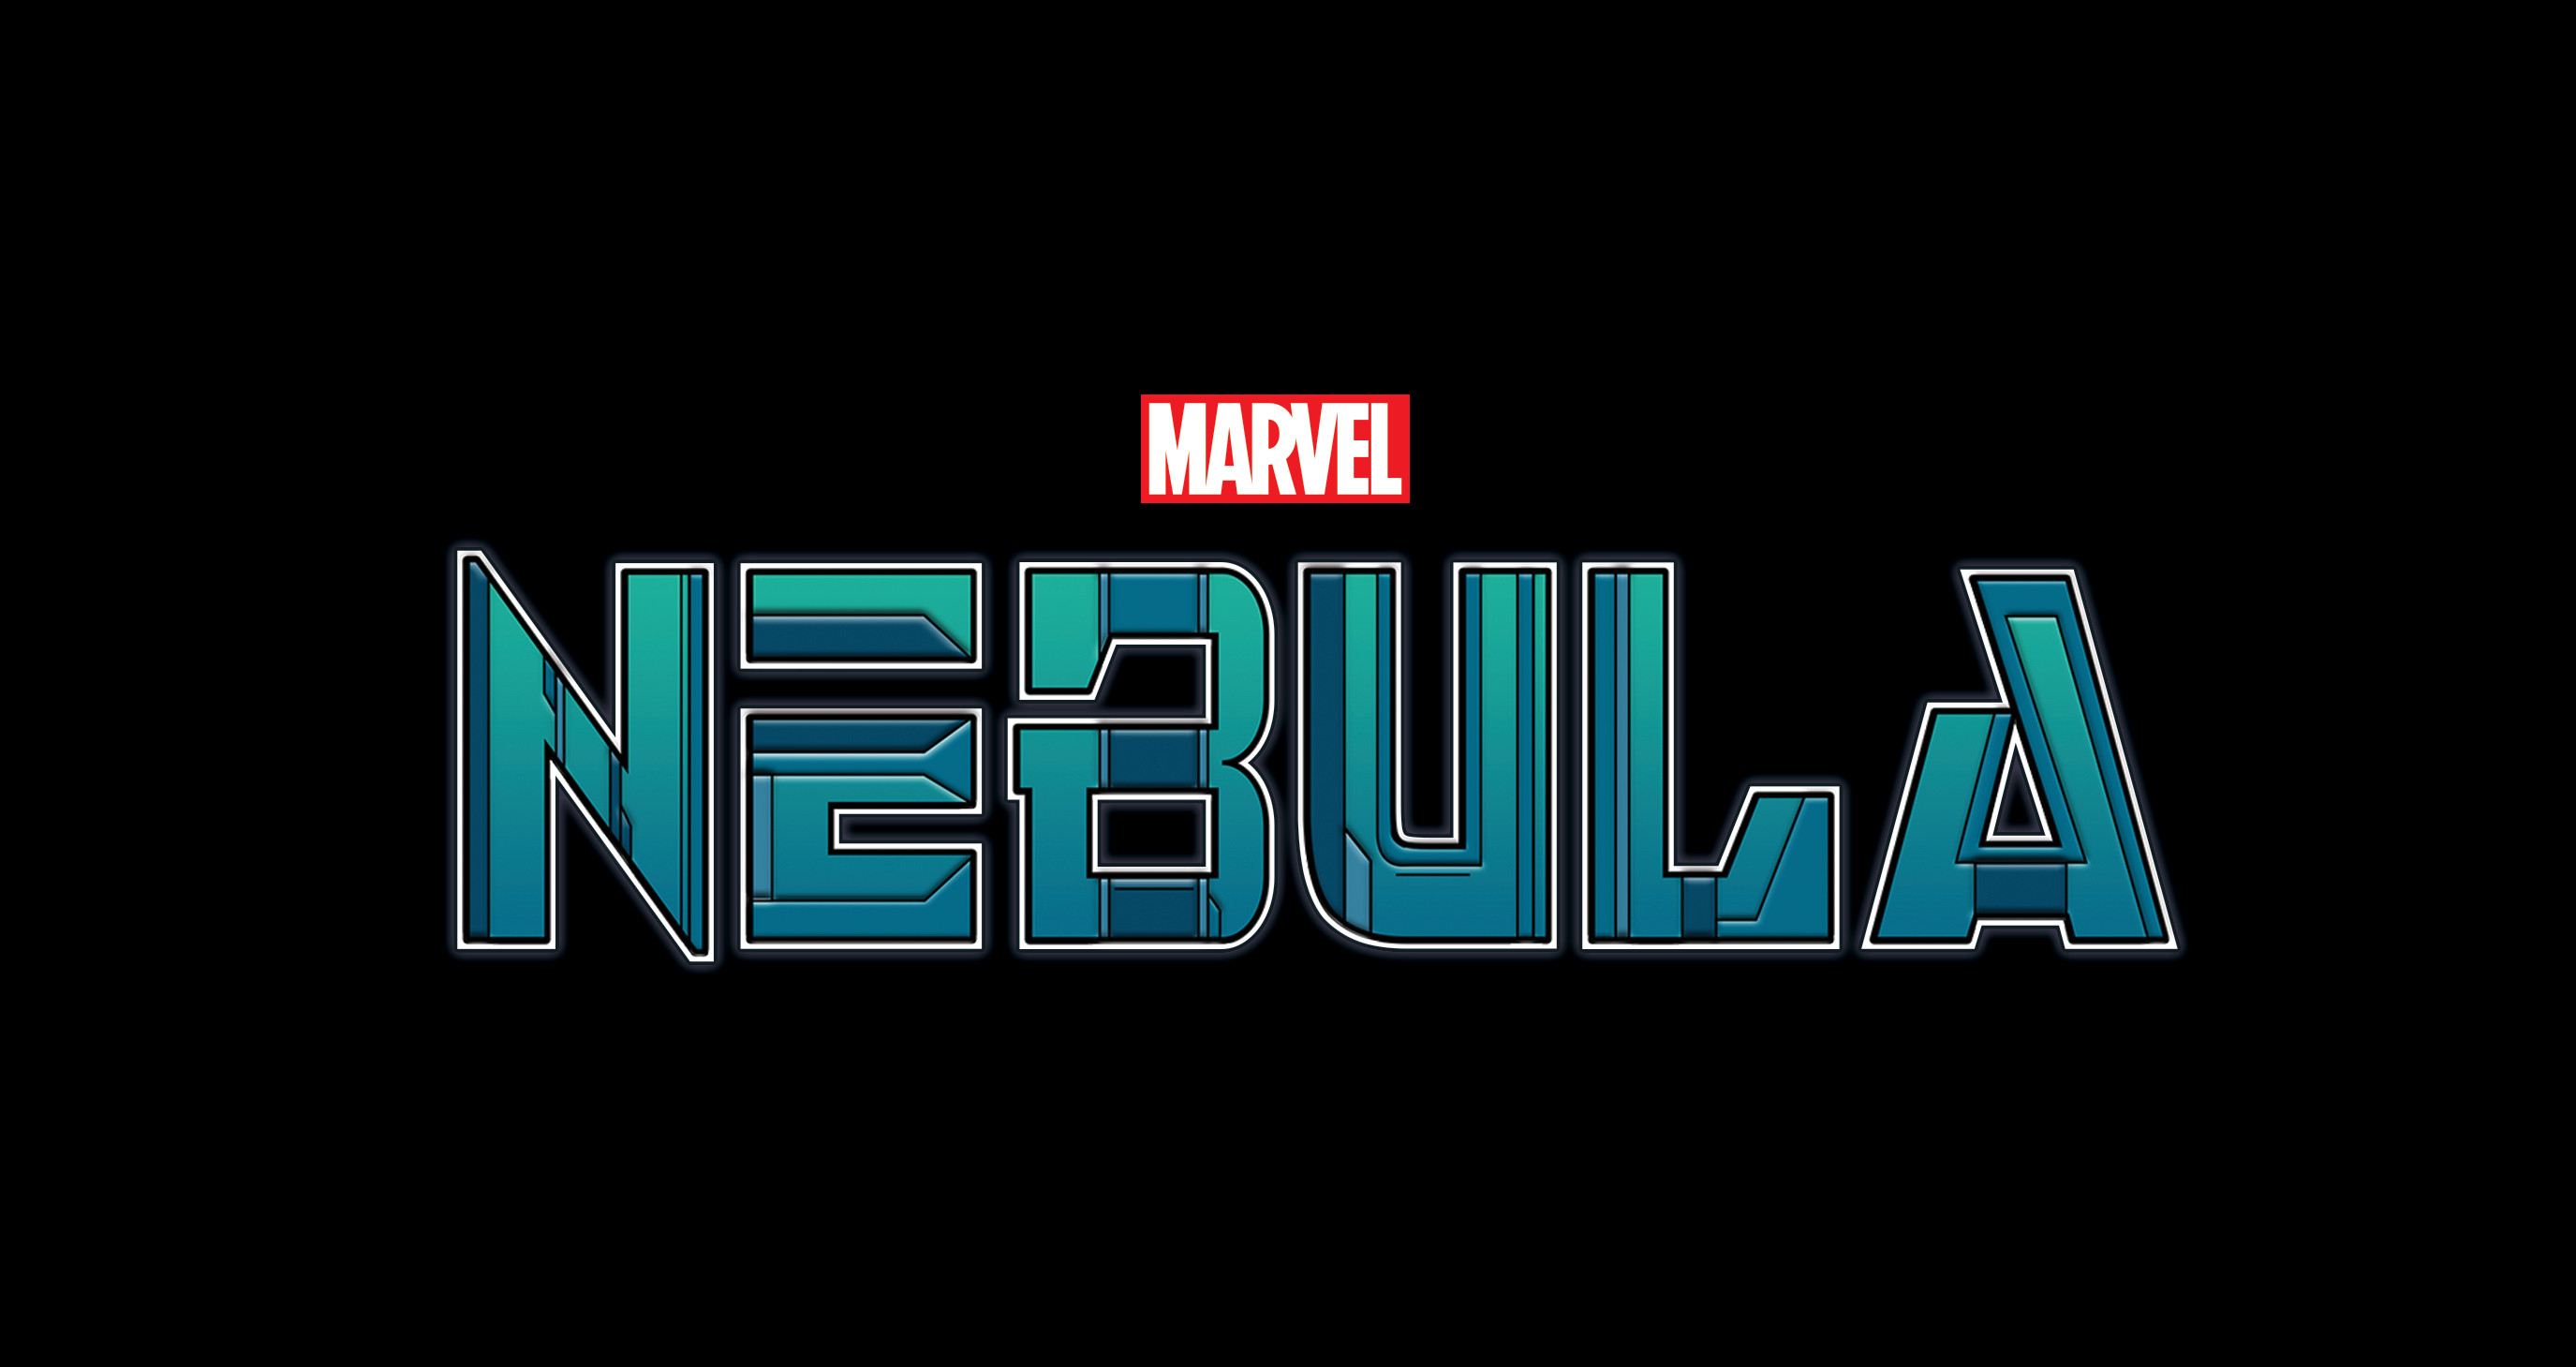 Marvel's Nebula Logo Design.  Published by Marvel Entertainment